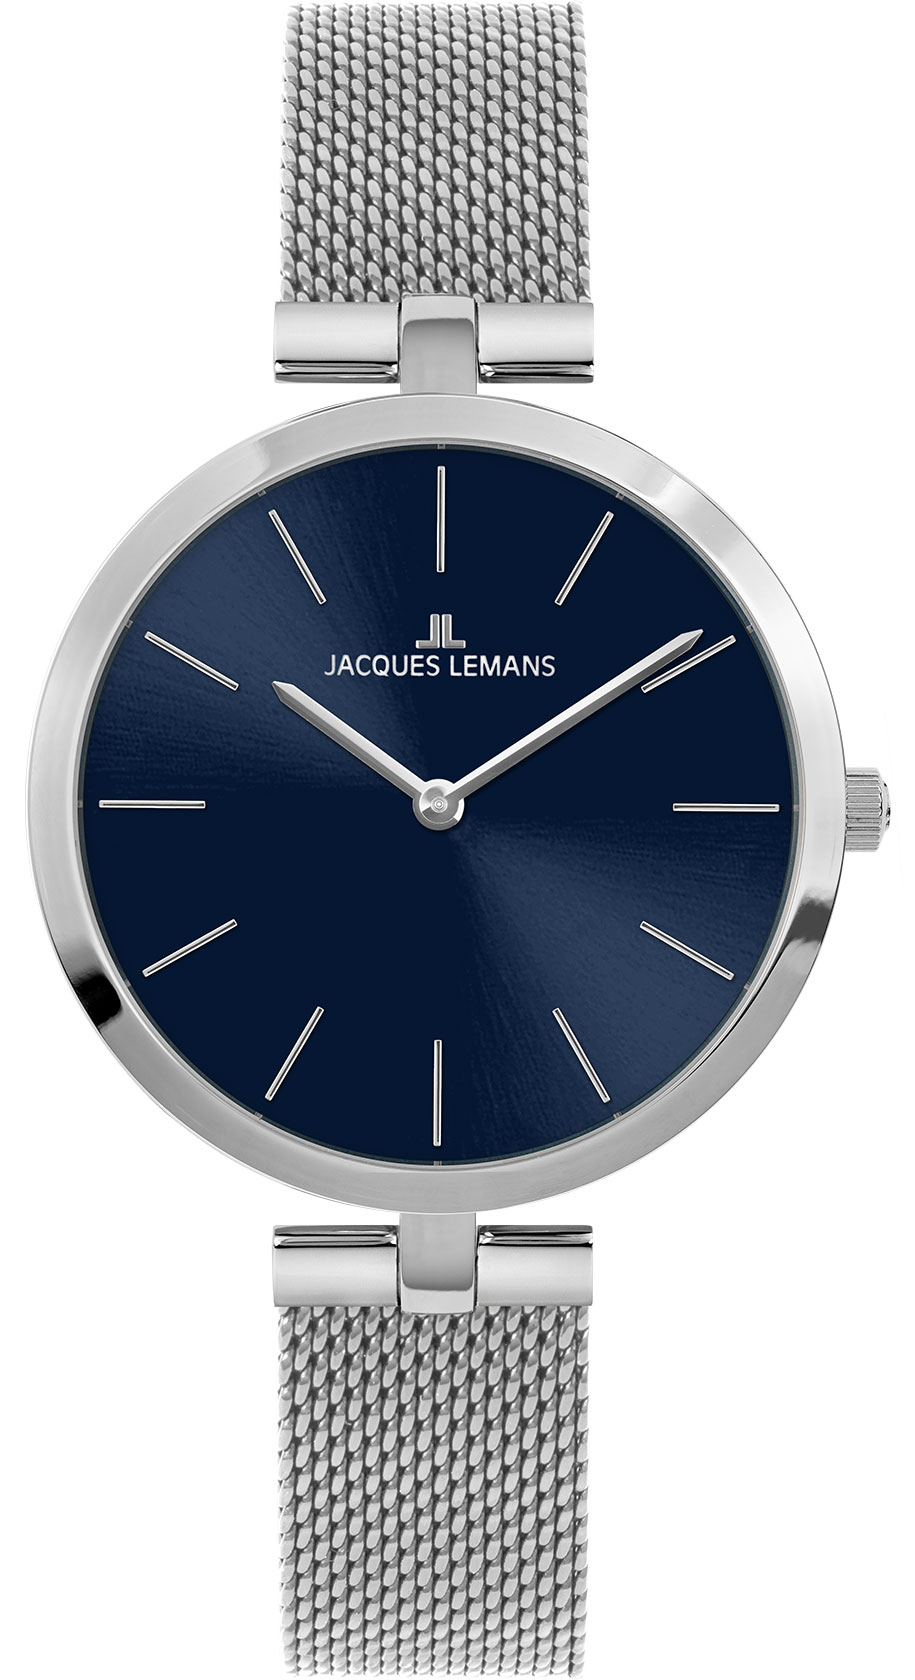 Женские часы Jacques Lemans Milano 1-2024Q - купить в интернет-магазине  3-15, цена, фото, характеристики и описание